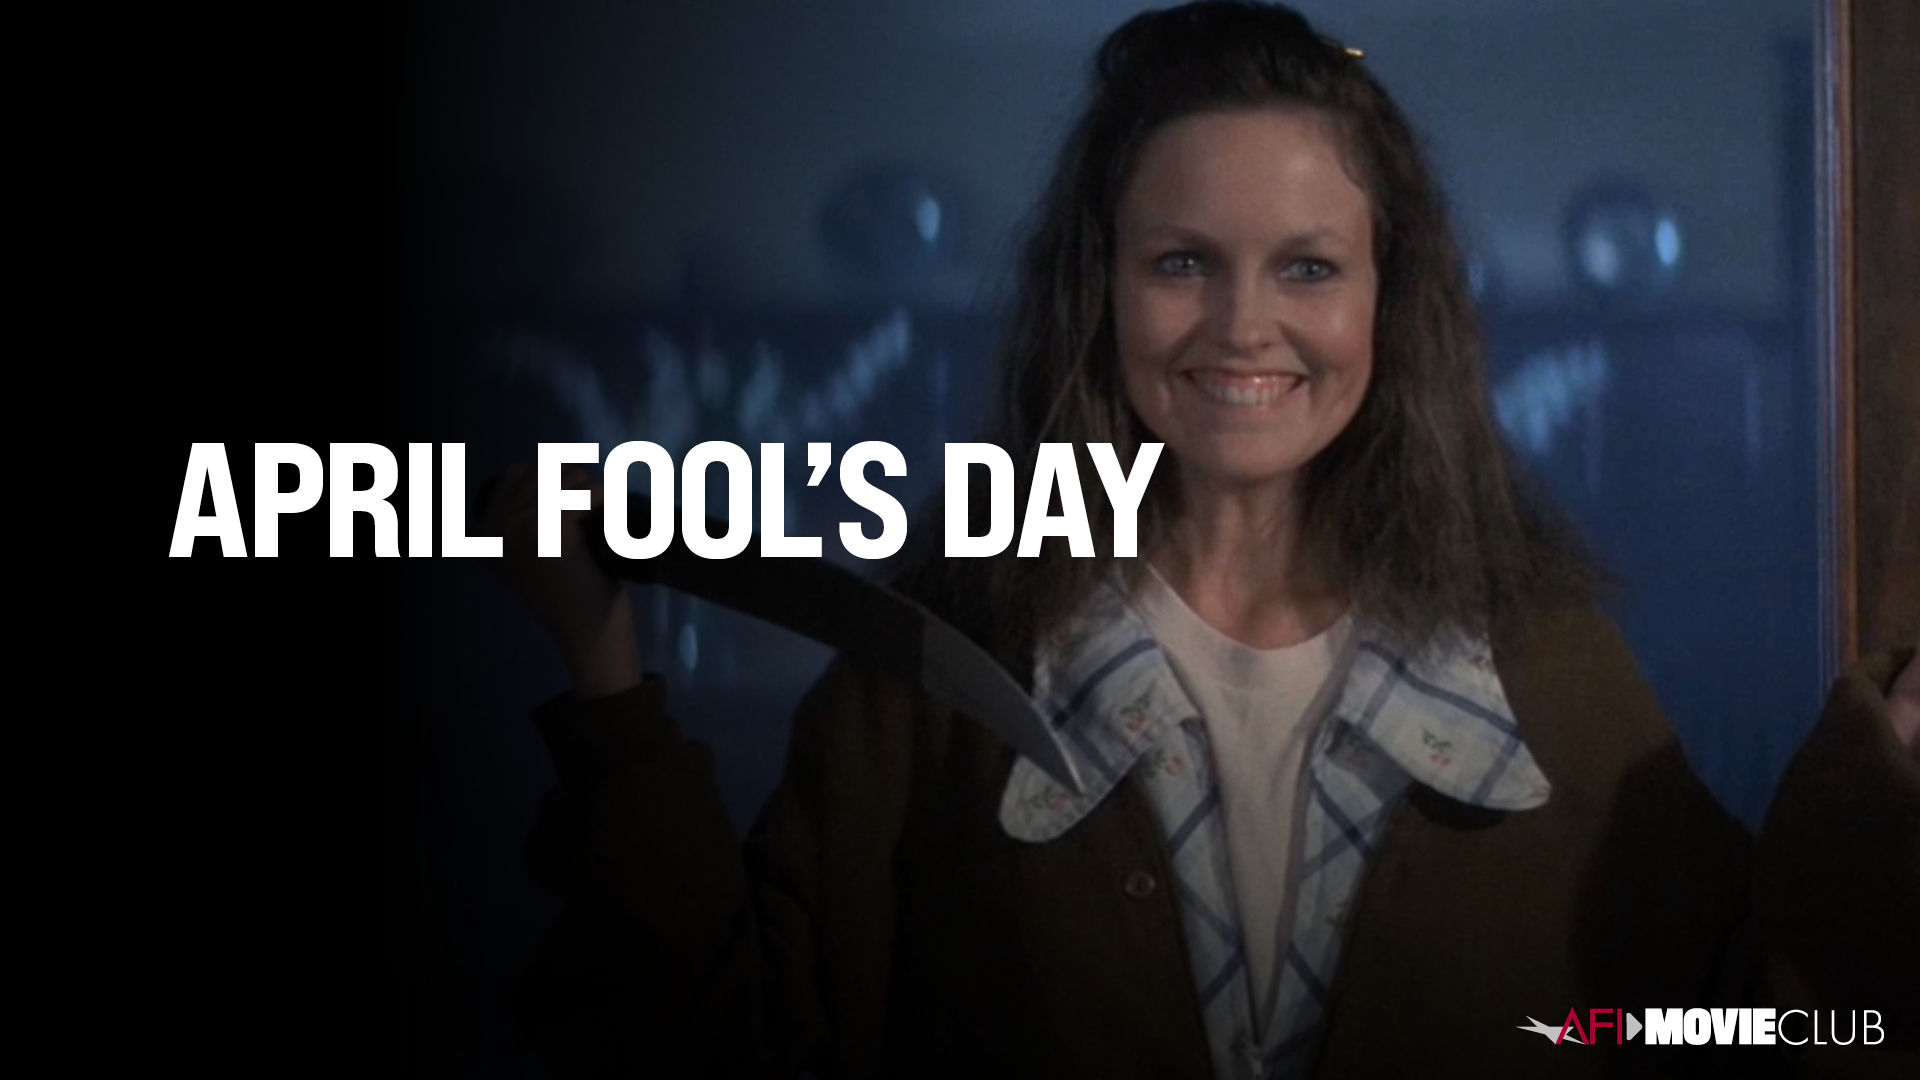 April Fool's Day Film Still - Deborah Foreman